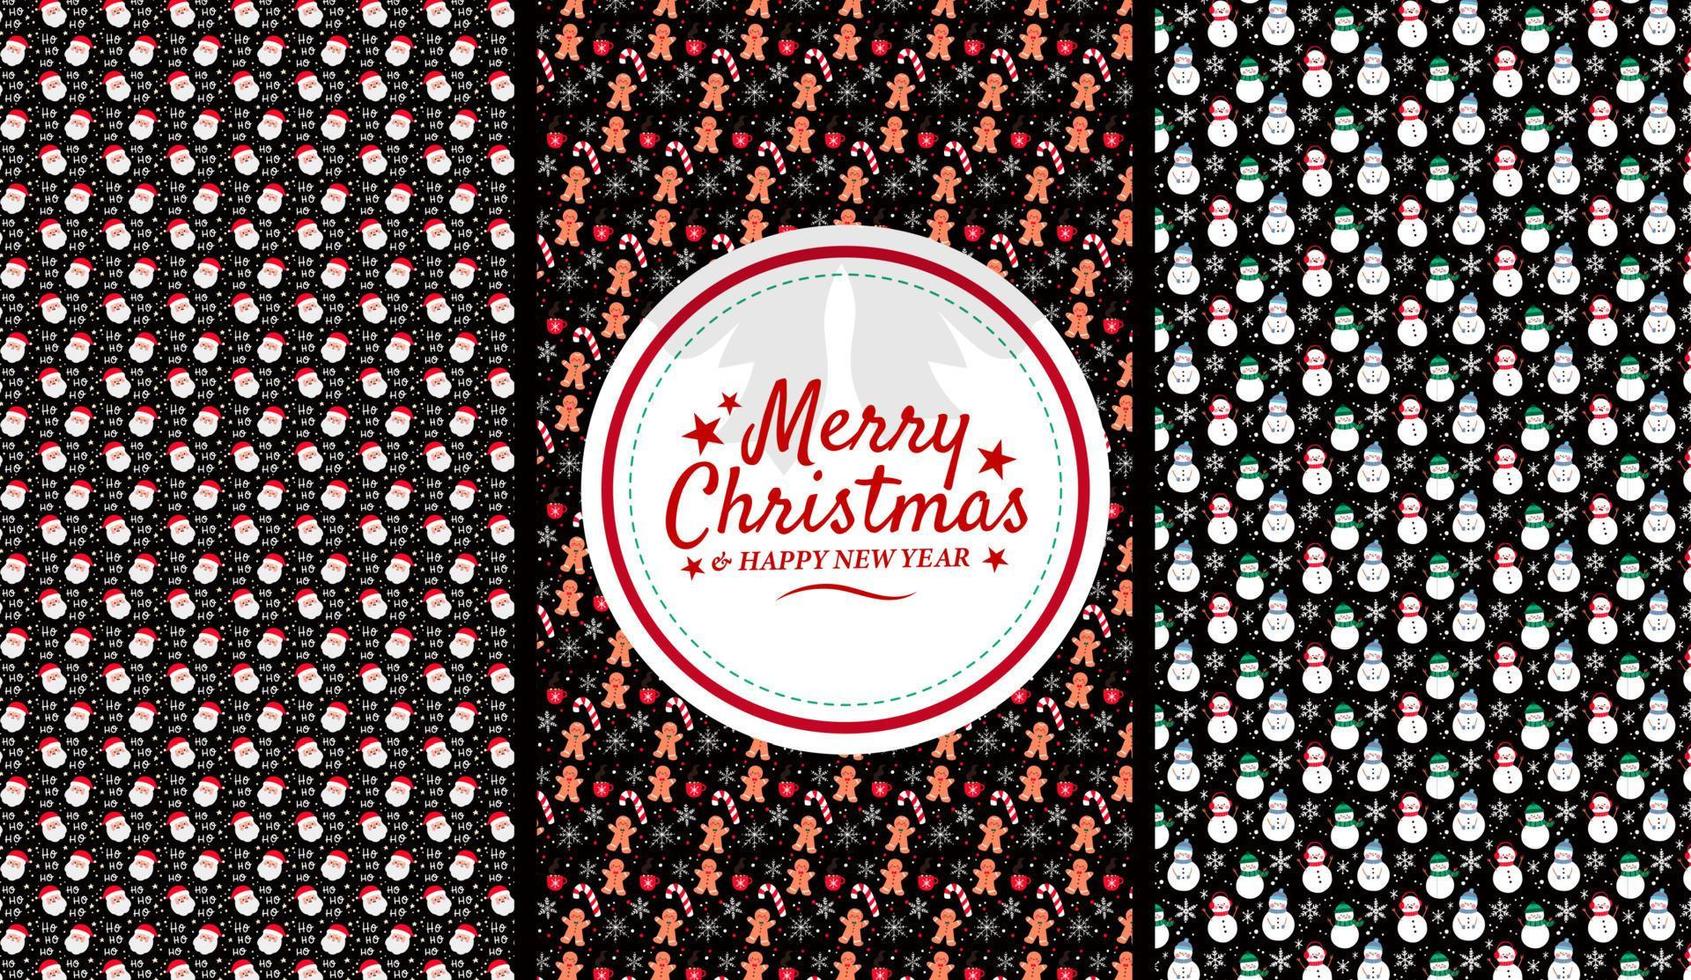 patrón de tarjeta de felicitación de feliz navidad con ramas de árbol árbol de navidad. ilustraciones de vectores de fondo de navidad